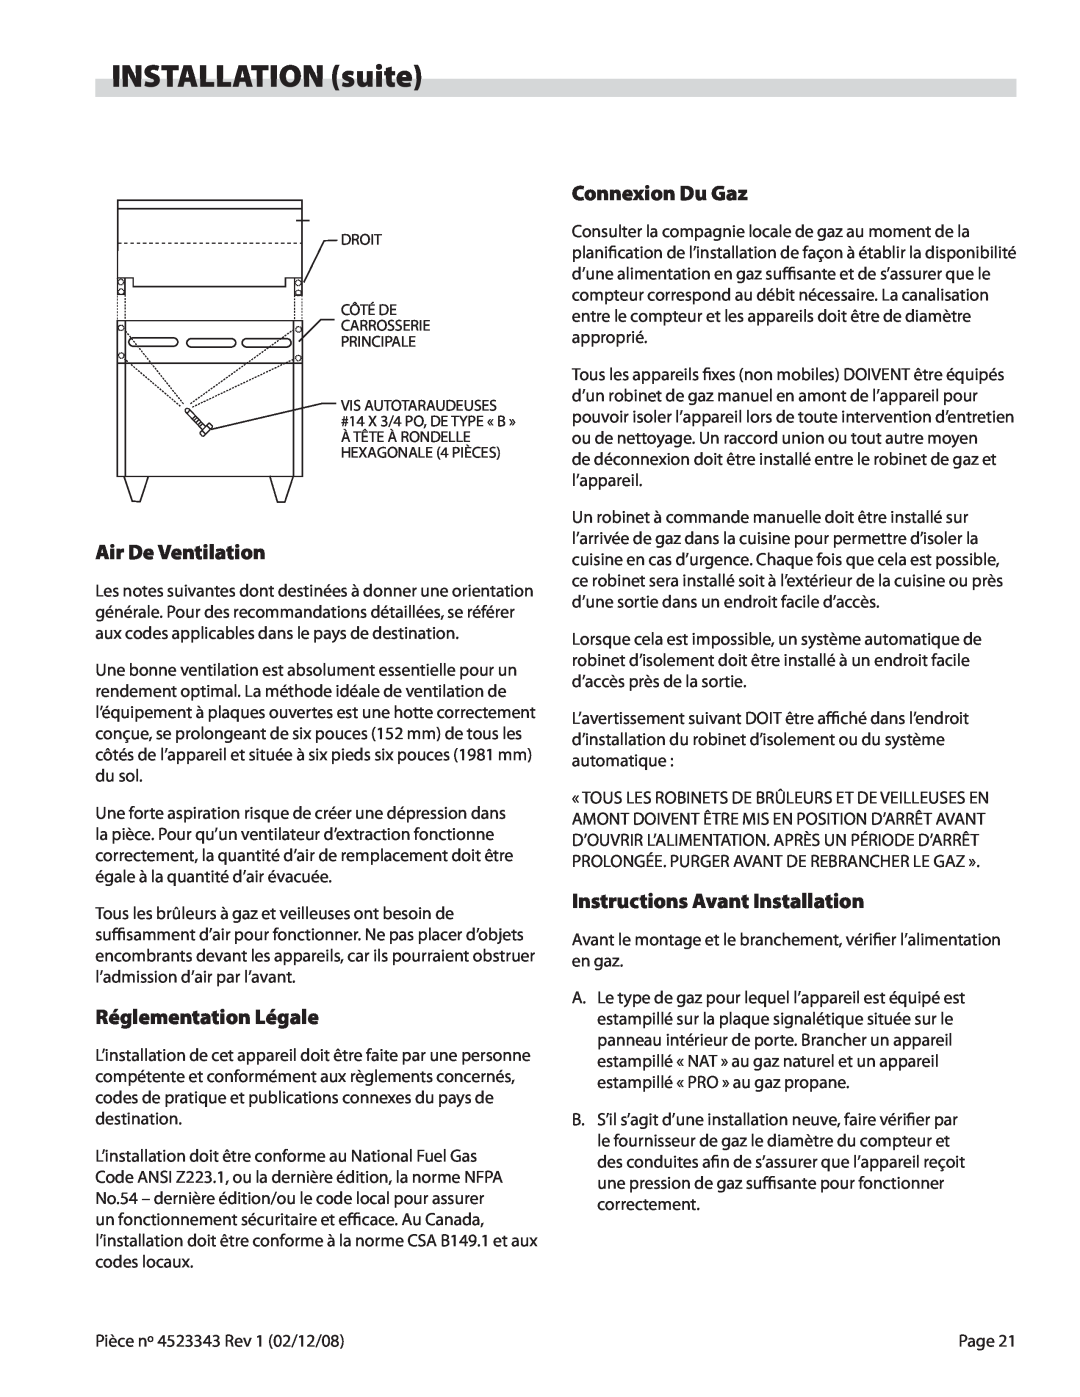 Sunfire X Series operation manual INSTALLATION suite, Air De Ventilation, Réglementation Légale, Connexion Du Gaz 